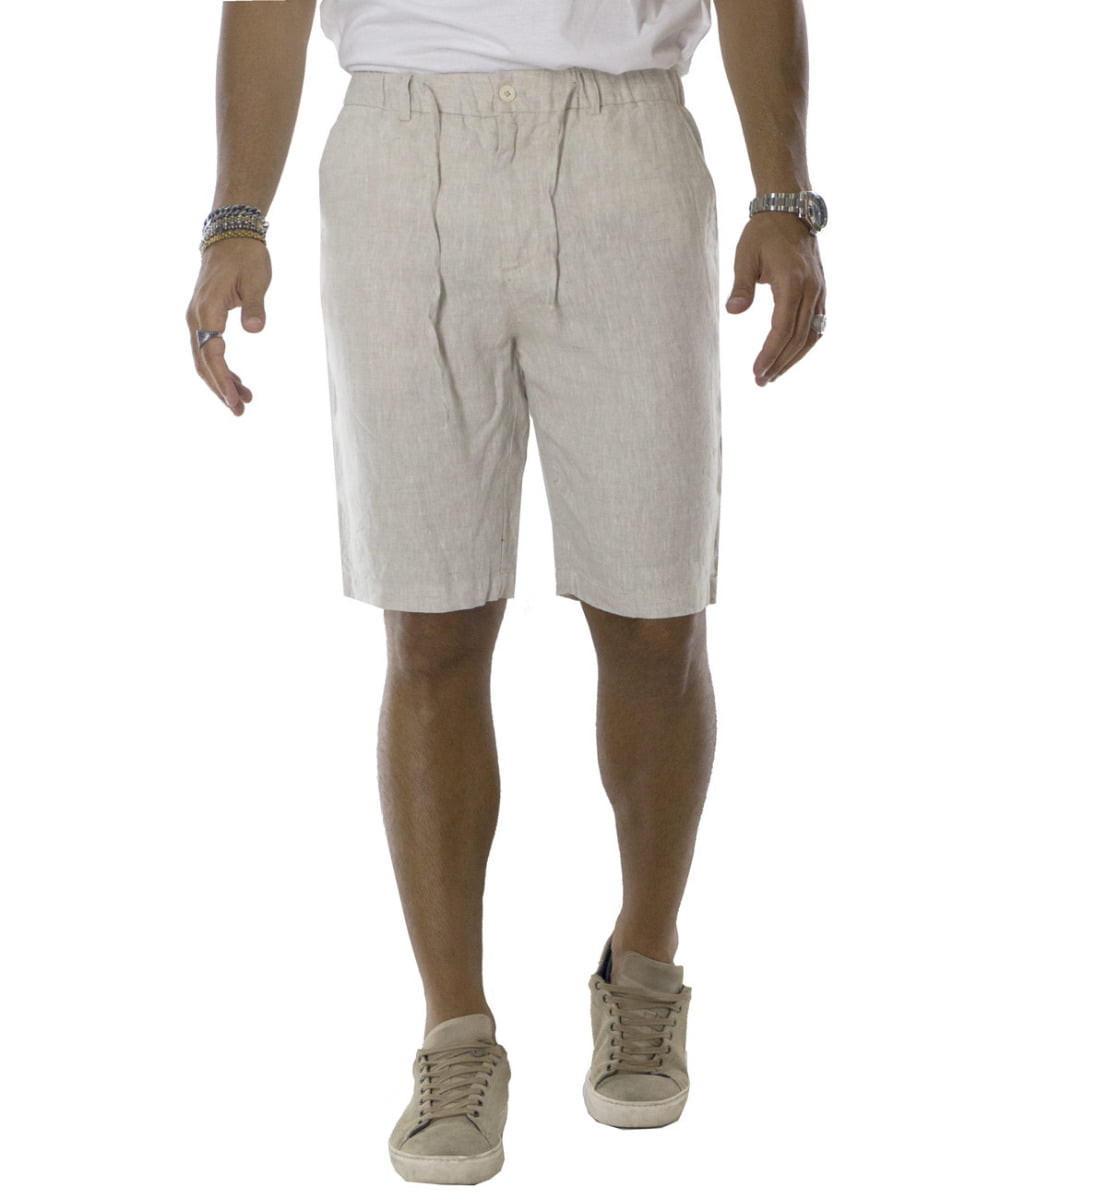 Bermuda uomo in lino modello tasca america regular fit con laccio in vita